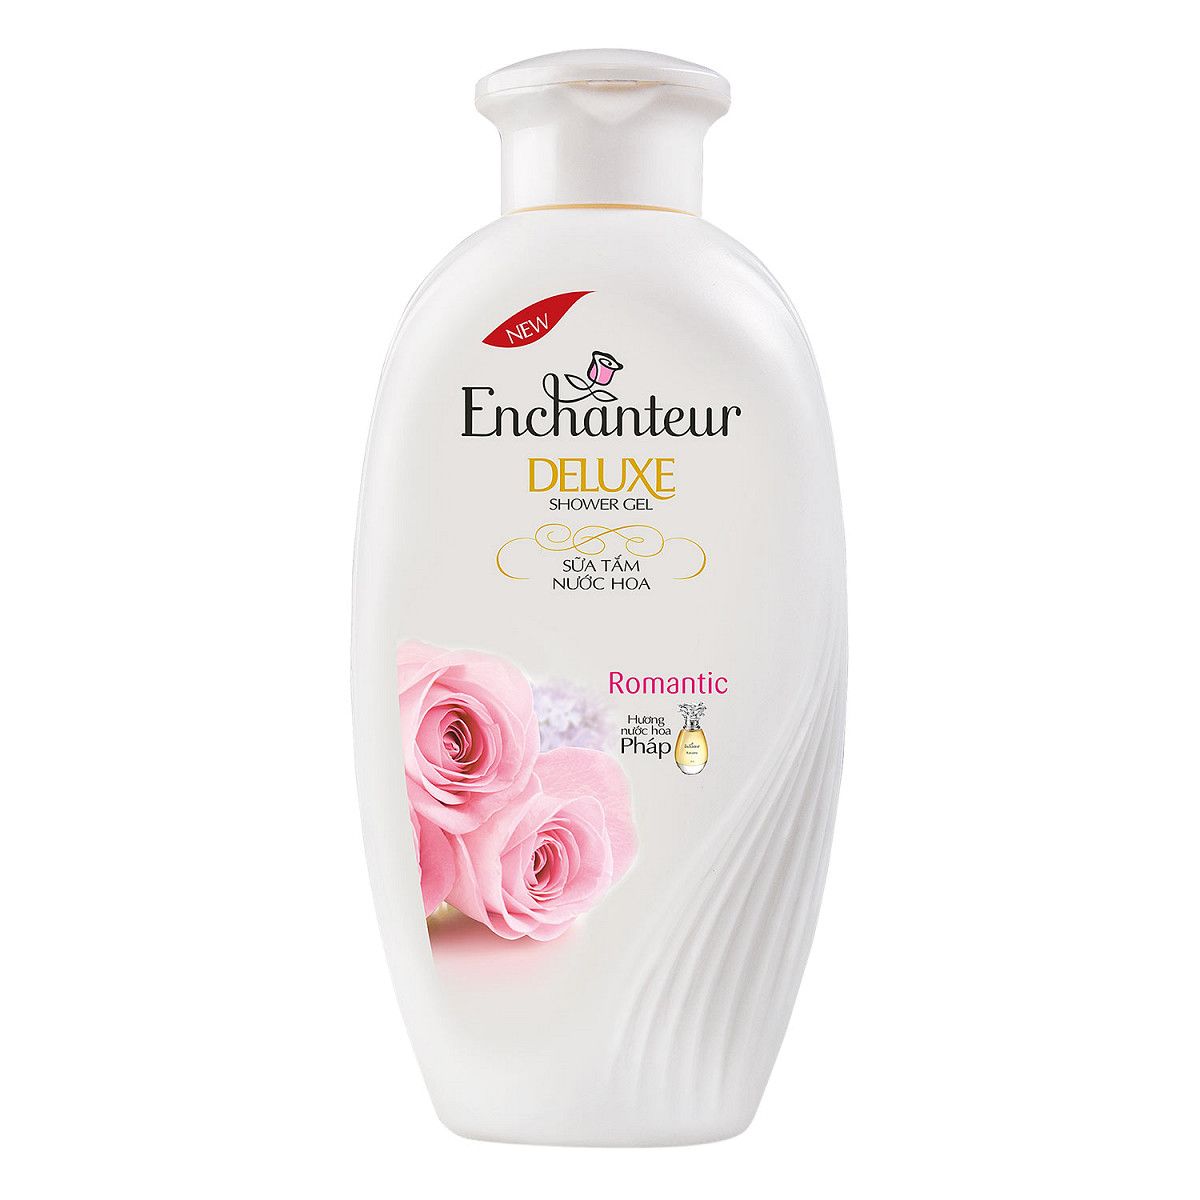  Sữa Tắm Enchanteur Deluxe - Romantic (180g) 